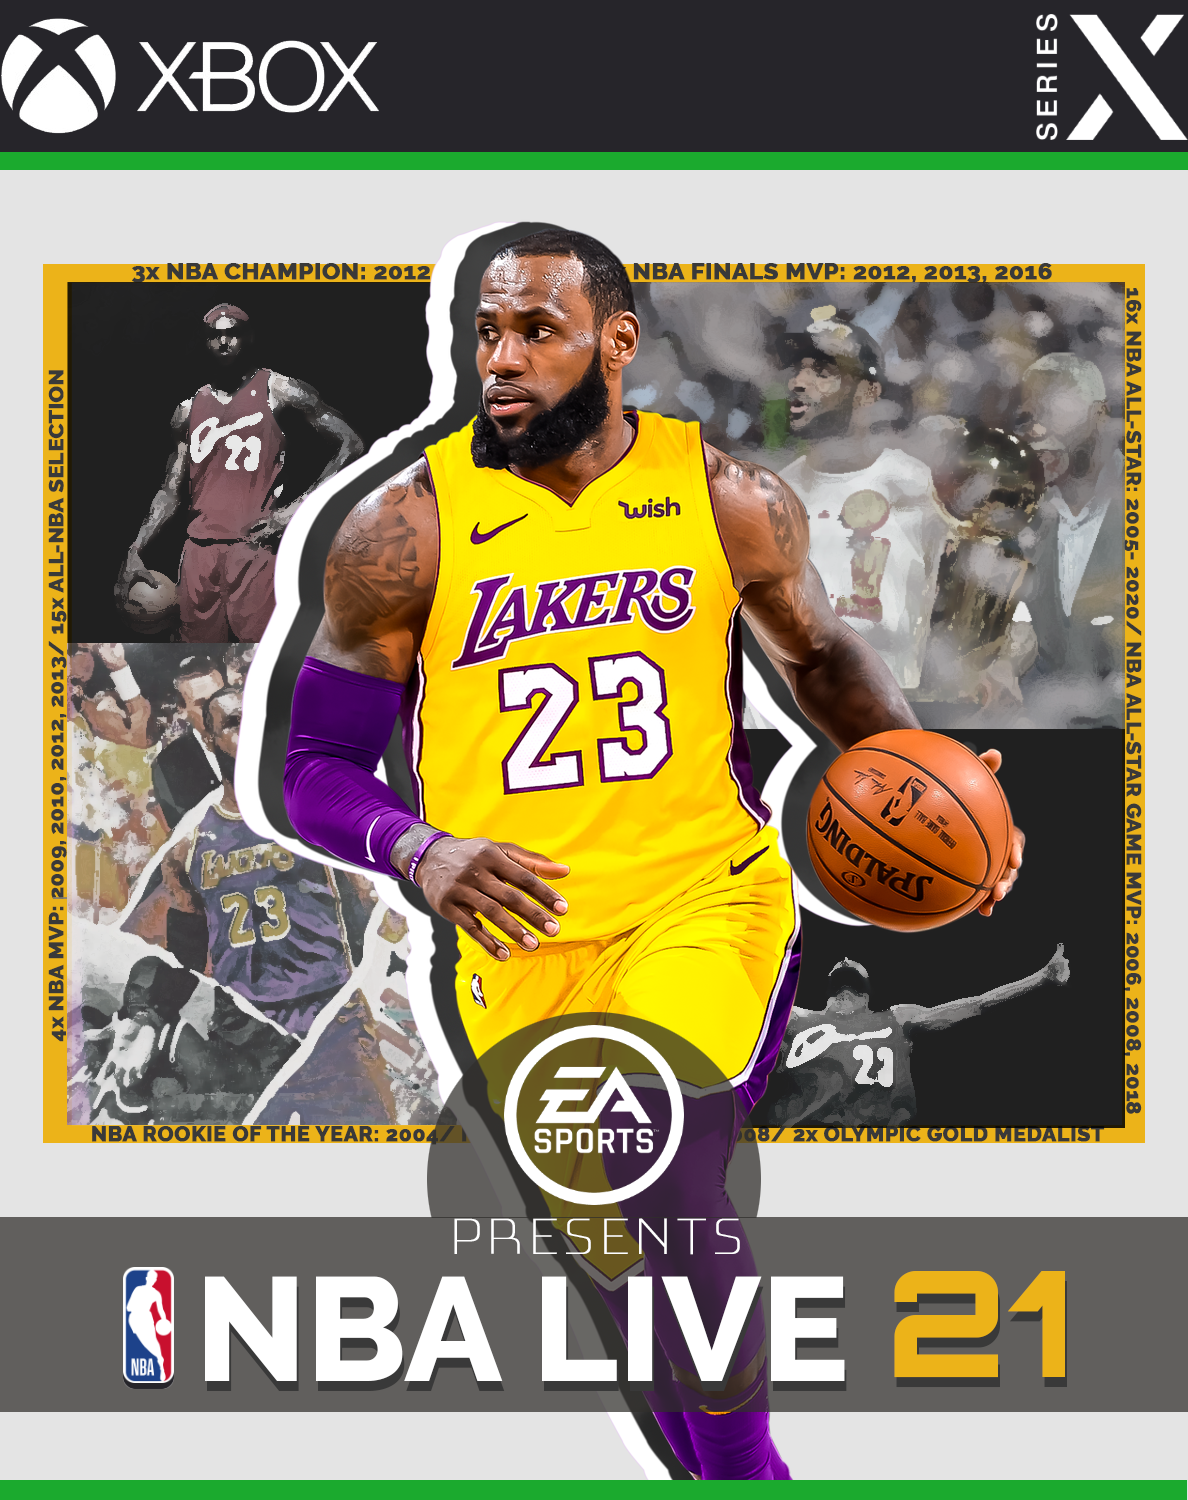 NBA LIVE 21 box cover